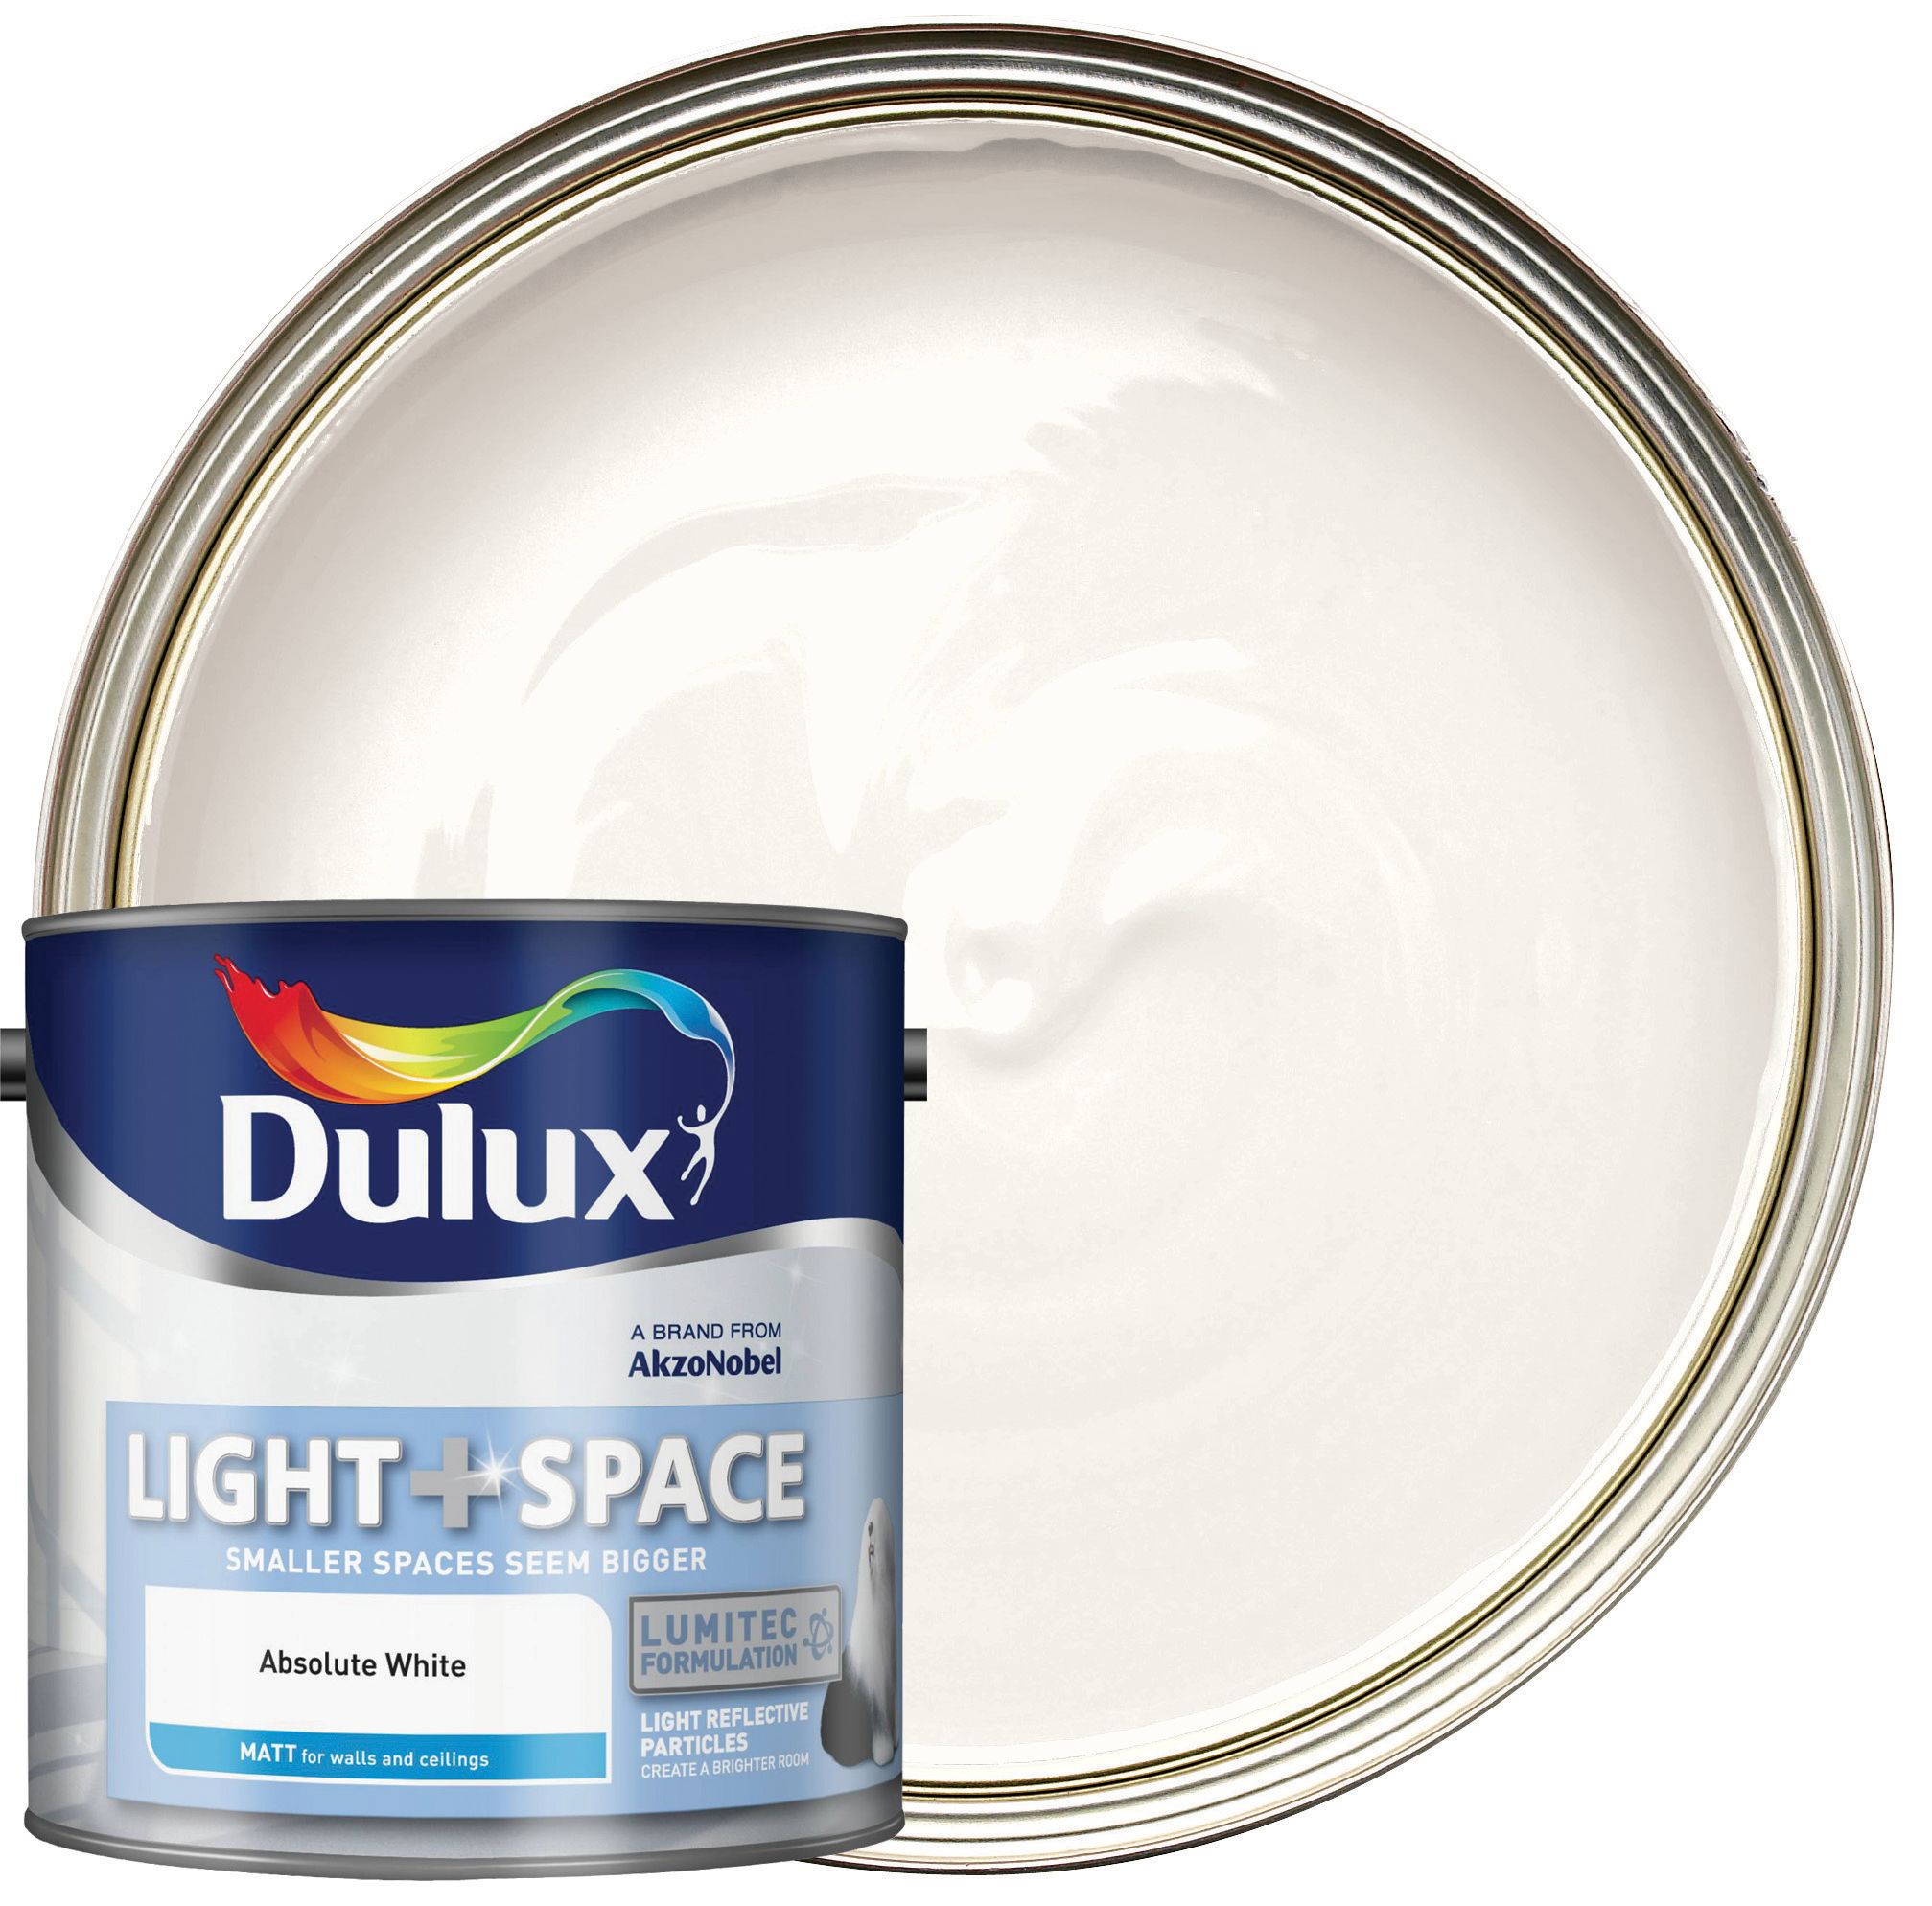 Dulux Light+ Space Matt Emulsion Paint - Absolute White - 2.5L